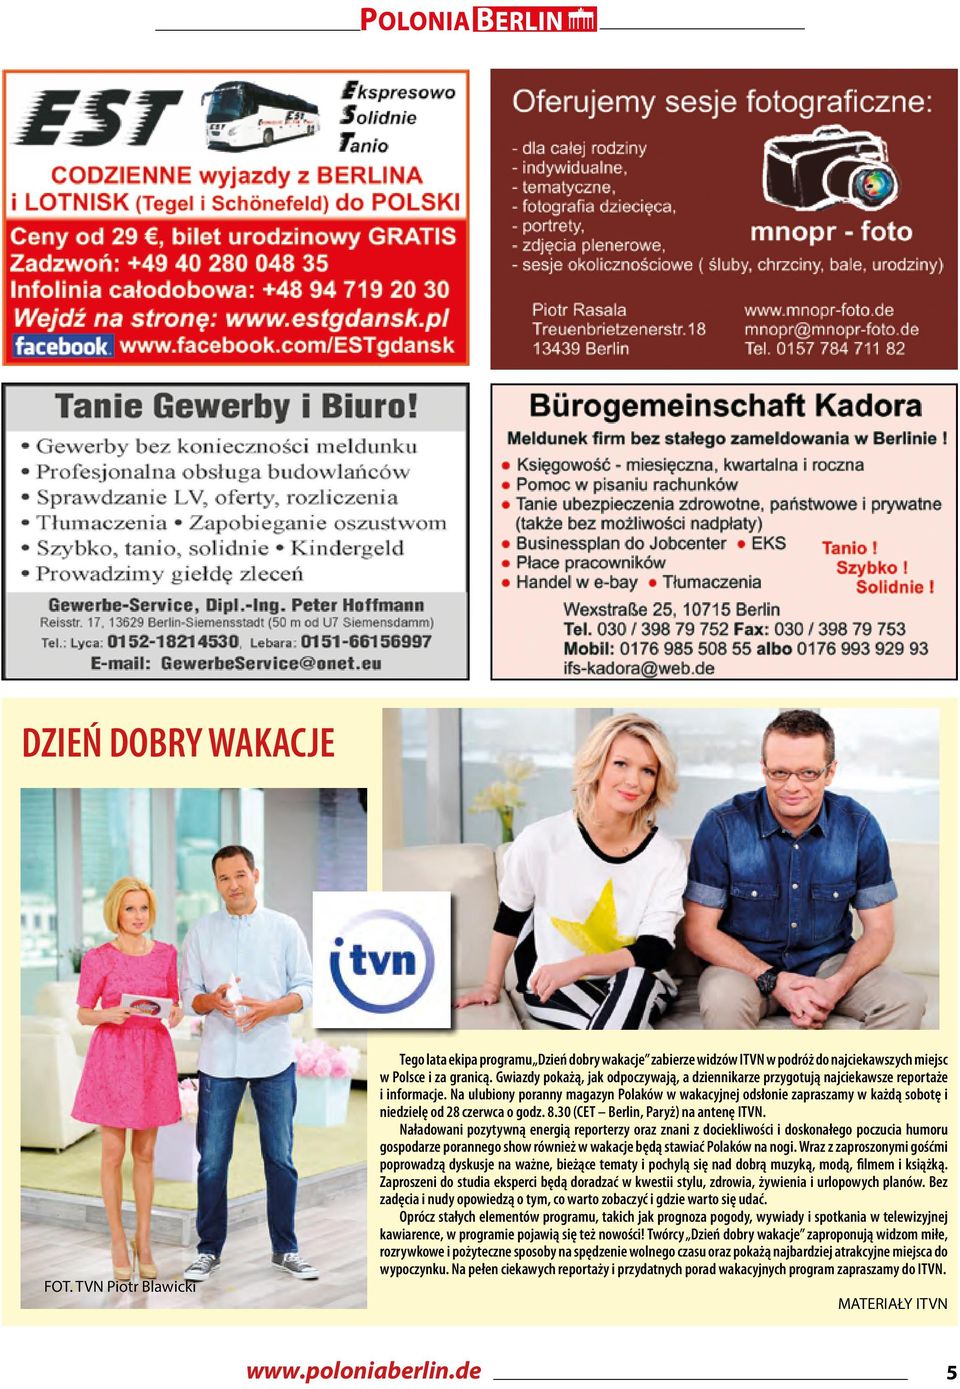 Na ulubiony poranny magazyn Polaków w wakacyjnej odsłonie zapraszamy w każdą sobotę i niedzielę od 28 czerwca o godz. 8.30 (CET Berlin, Paryż) na antenę ITVN.